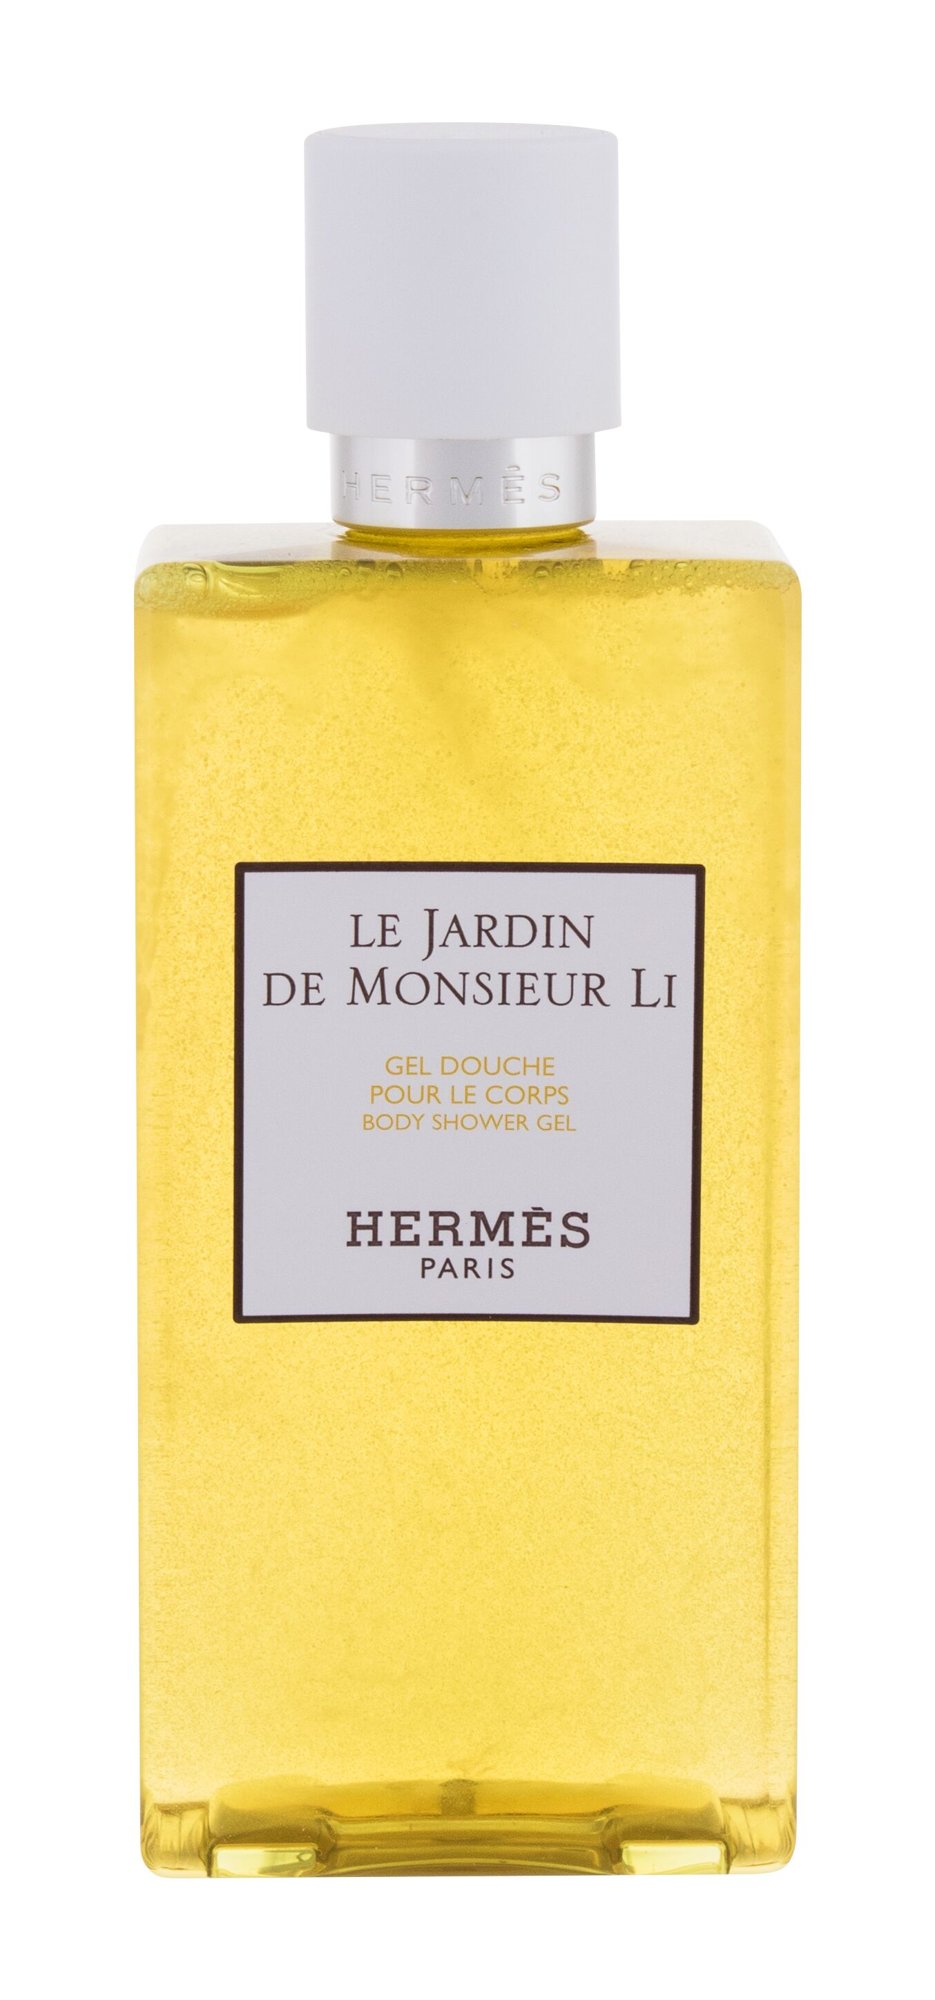 Hermes Le Jardin de Monsieur Li 200ml dušo želė